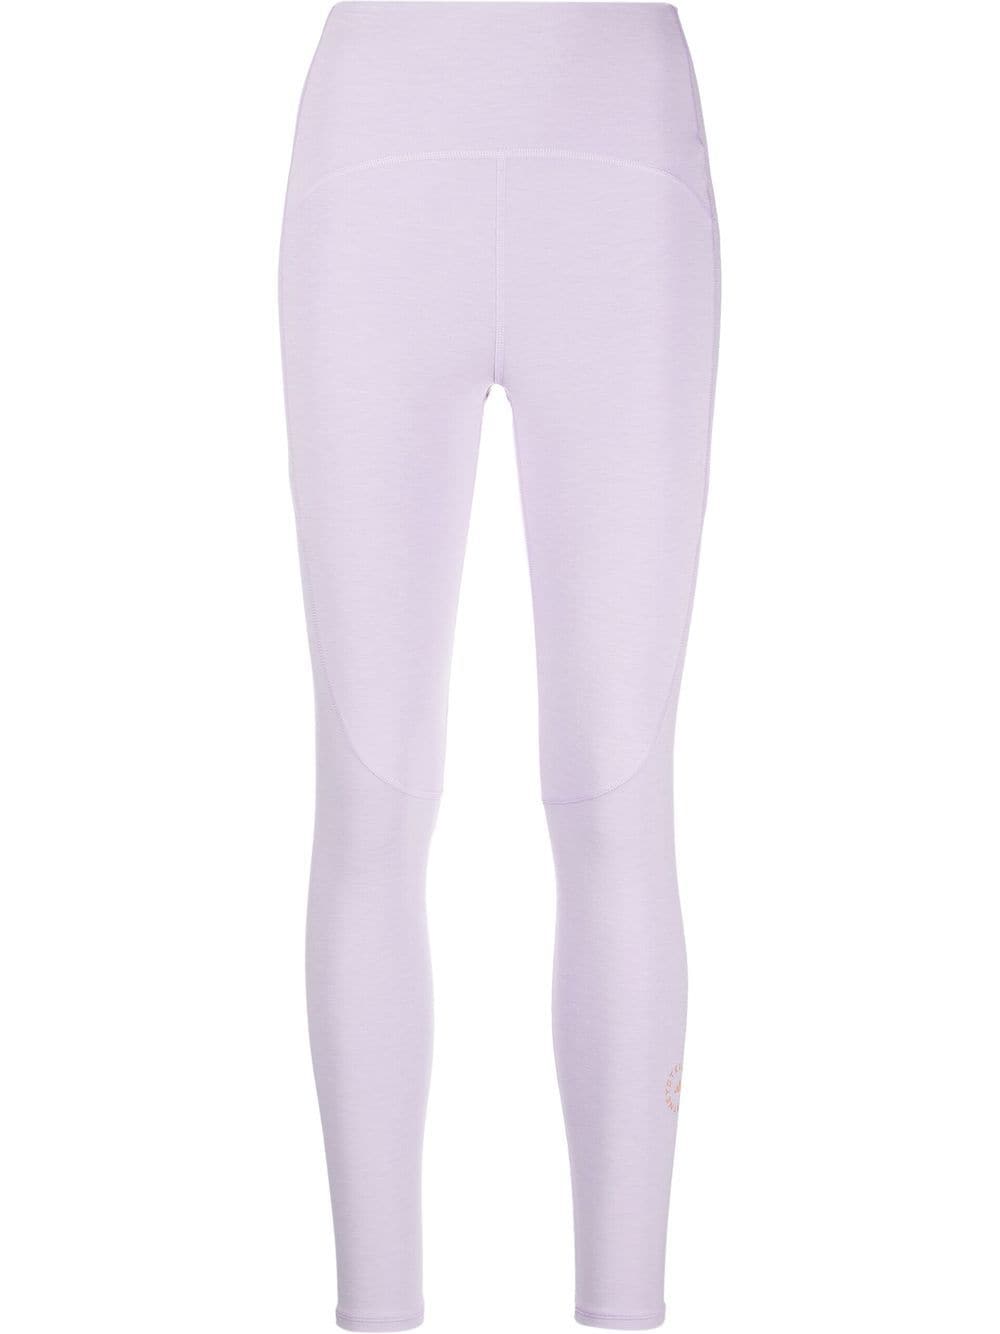 adidas by Stella McCartney 7/8 yoga leggings - Purple